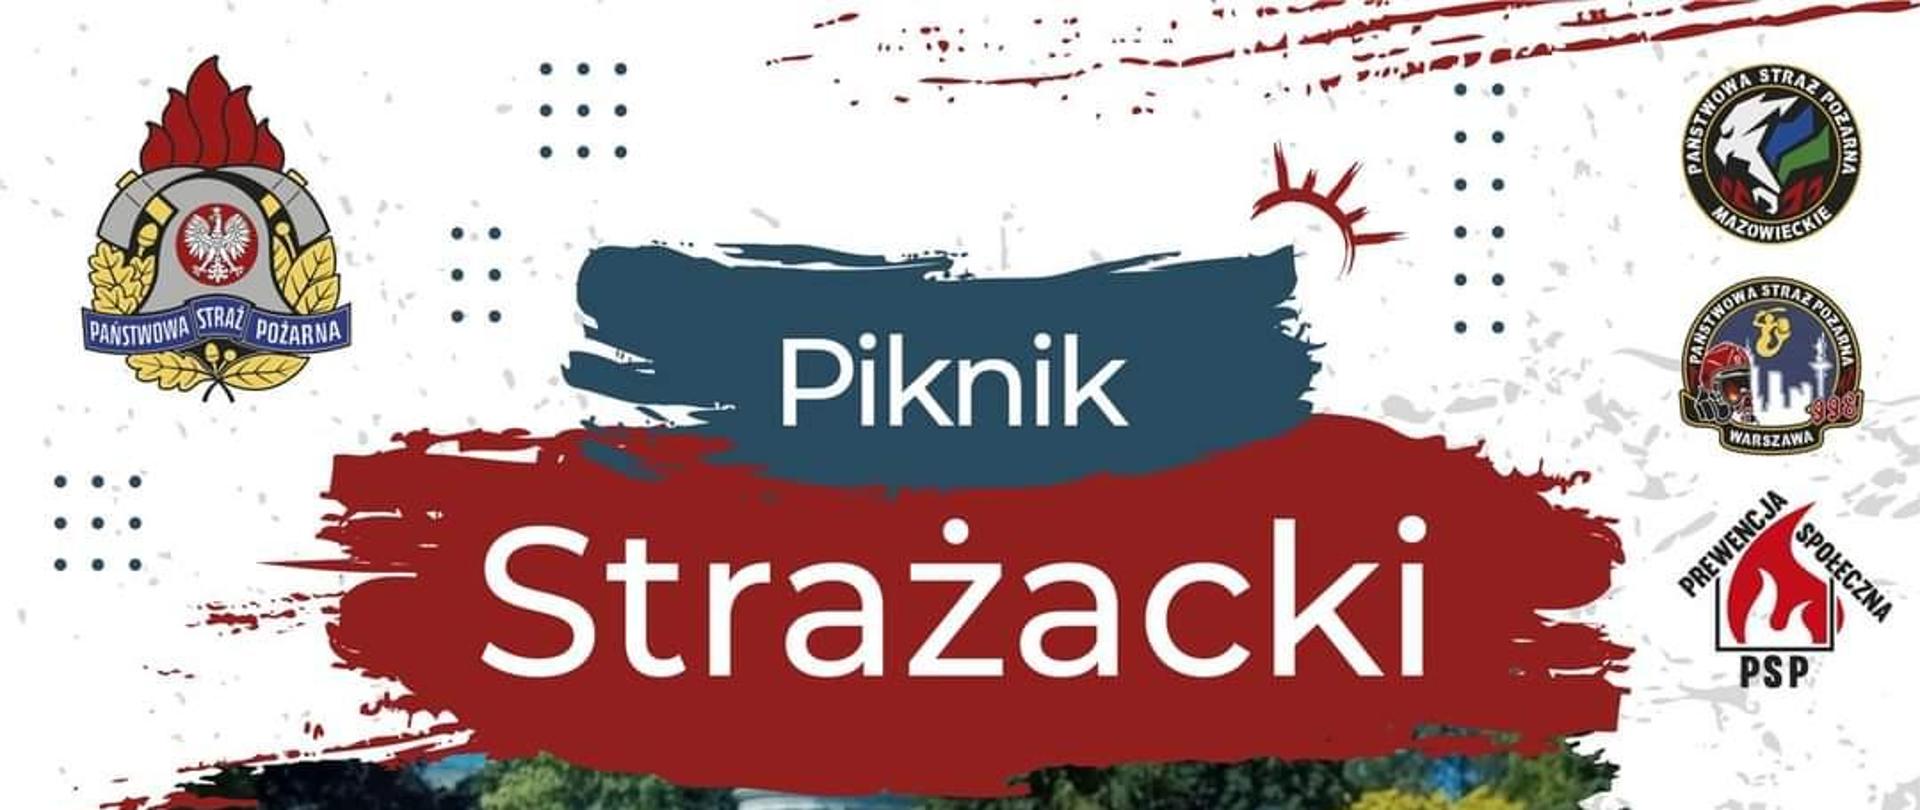 Plakat_piknik_strażacki